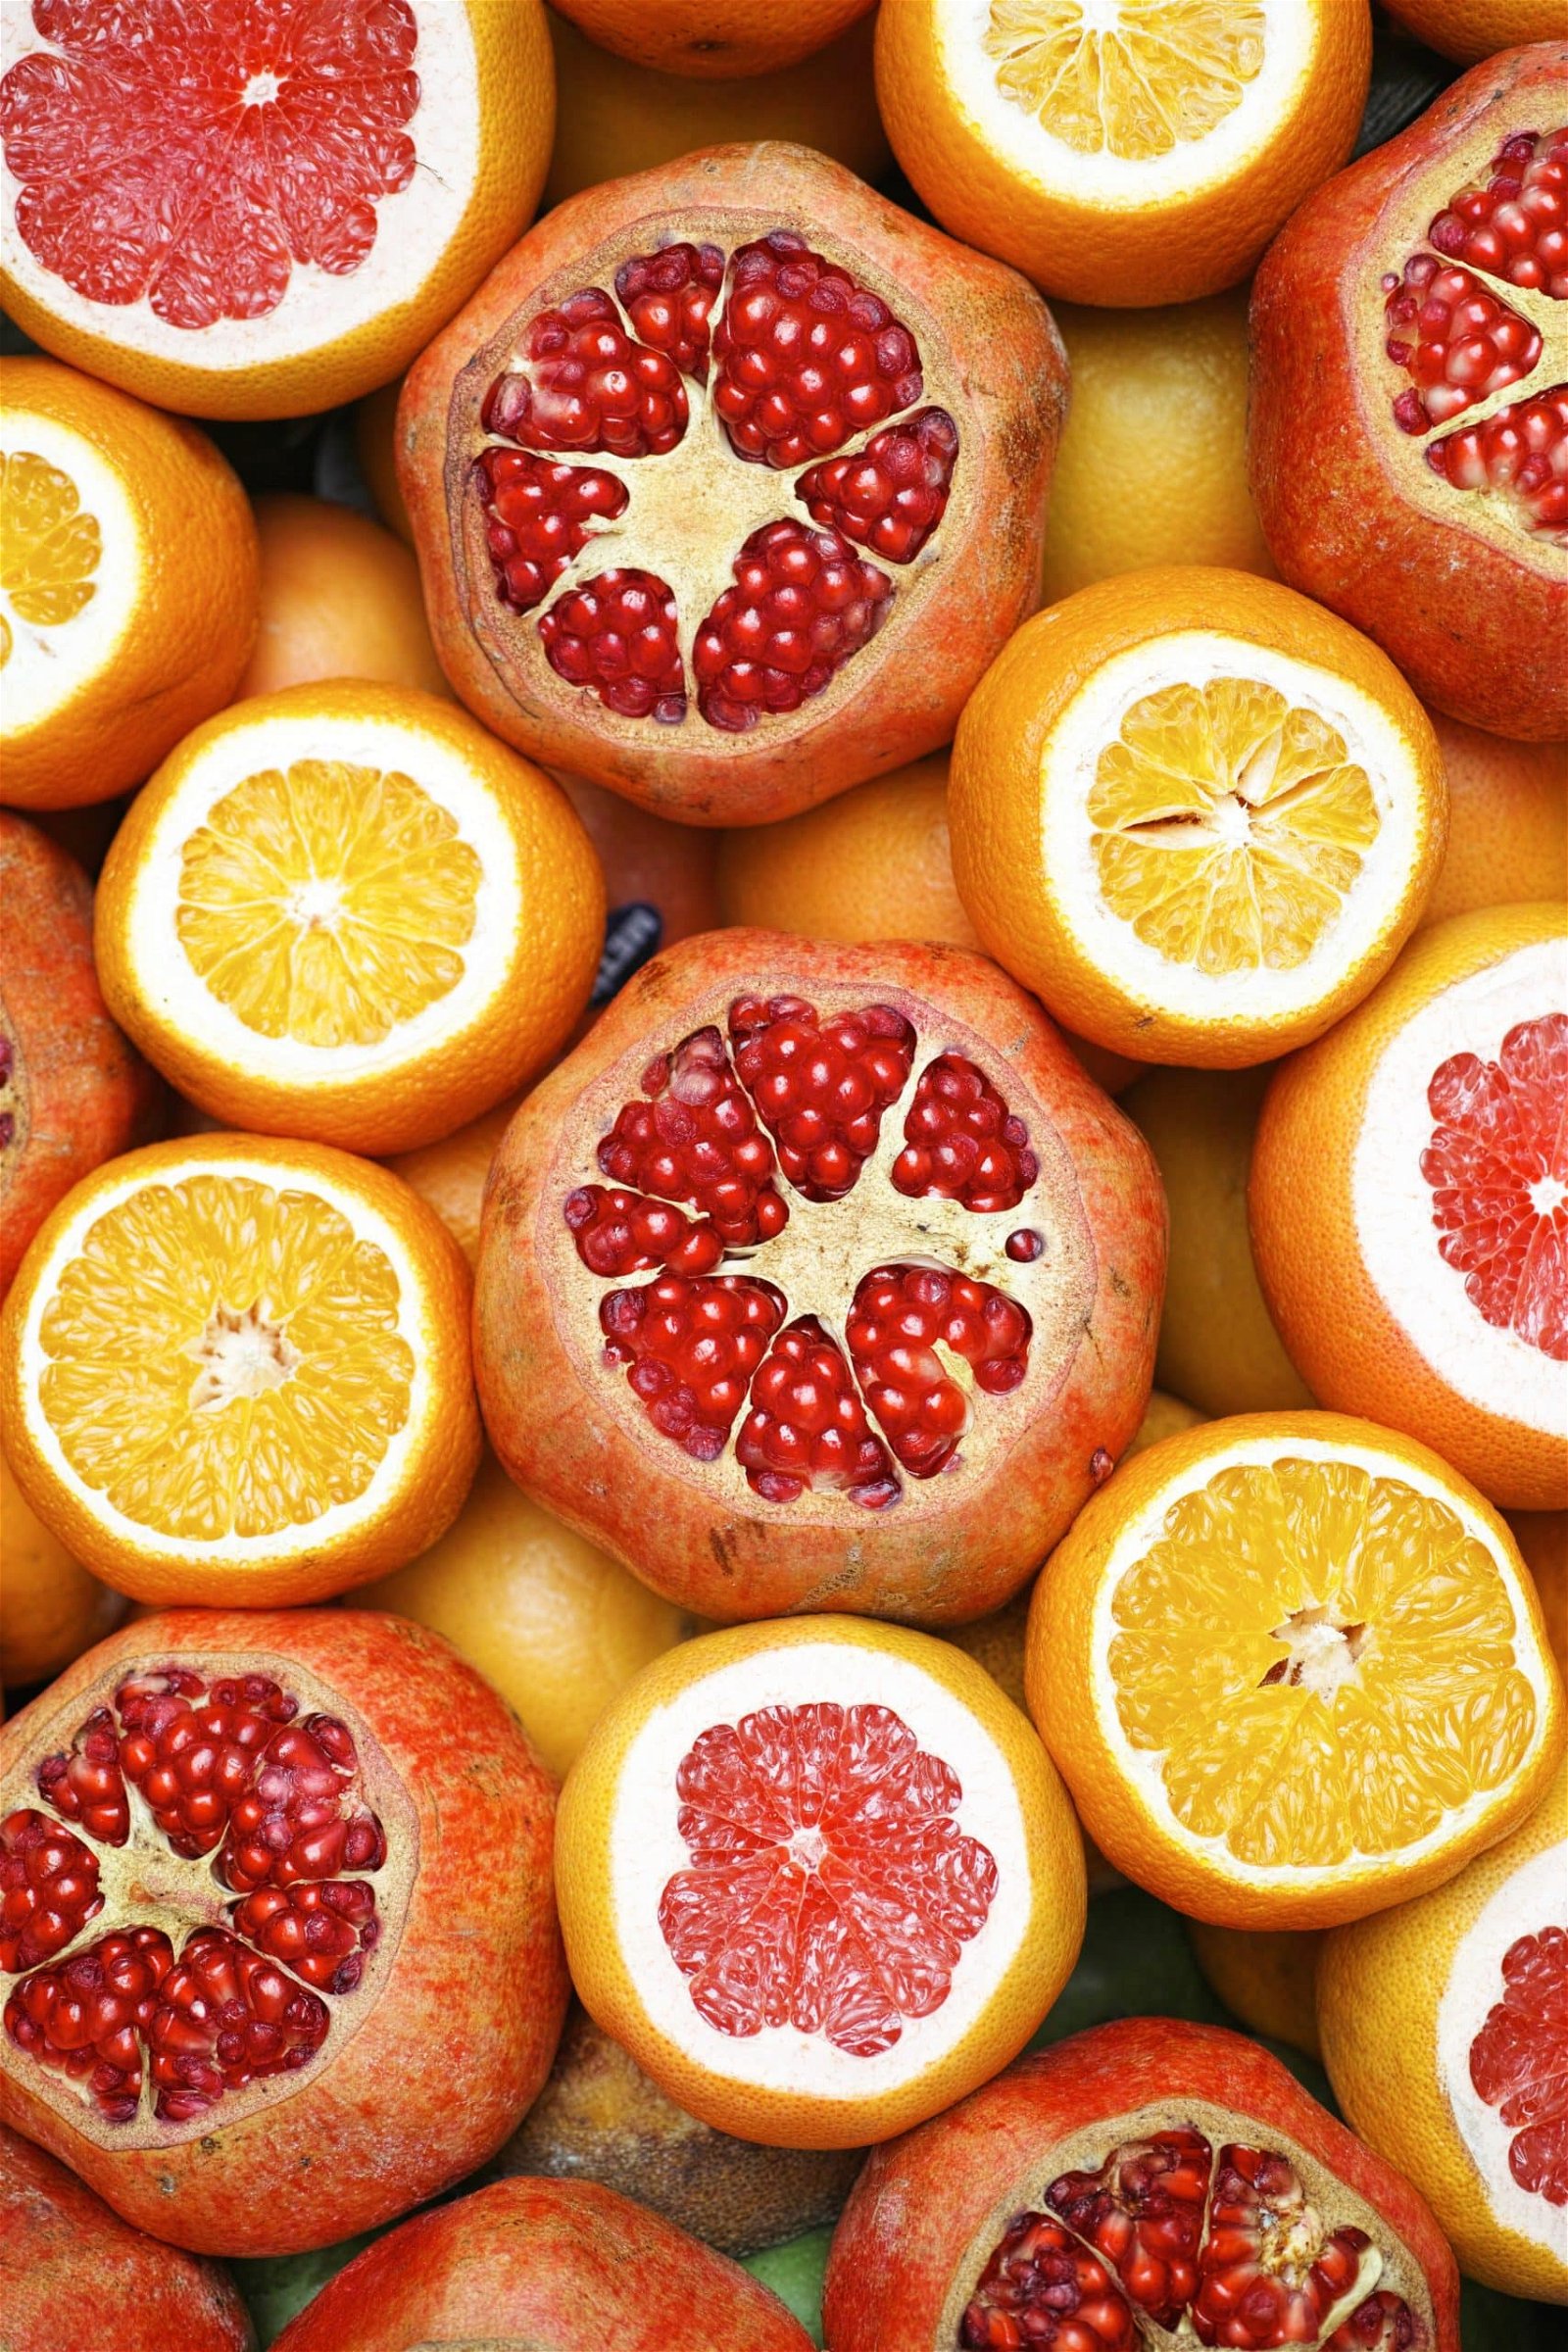 Vitaminmangel mit Obst bekämpfen